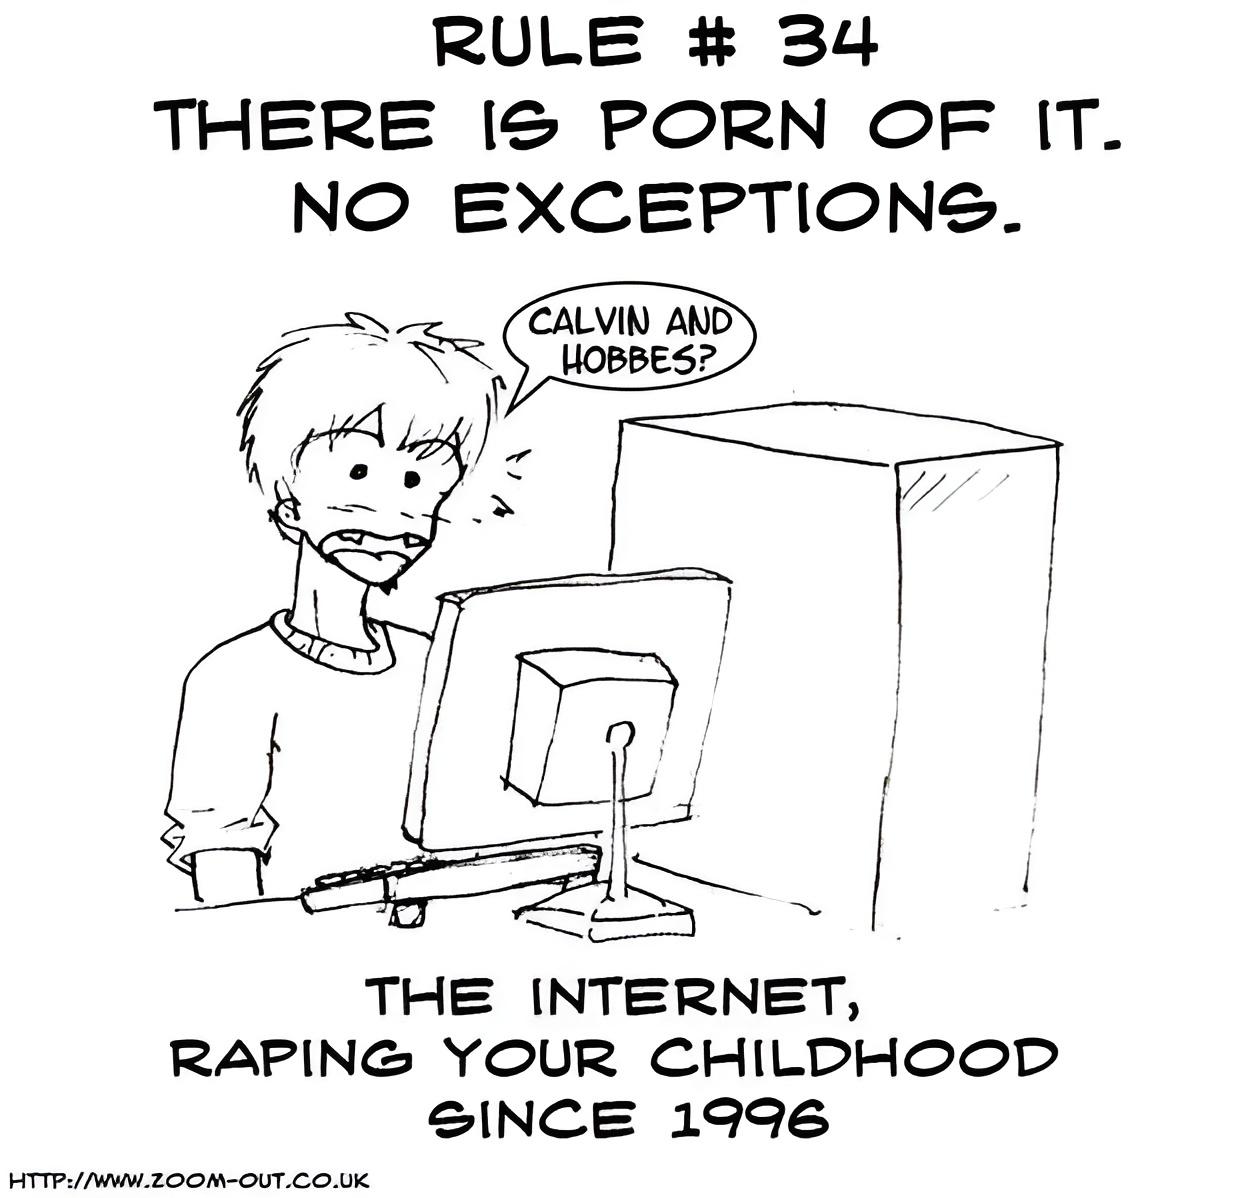 Cual es la regla 34 de internet